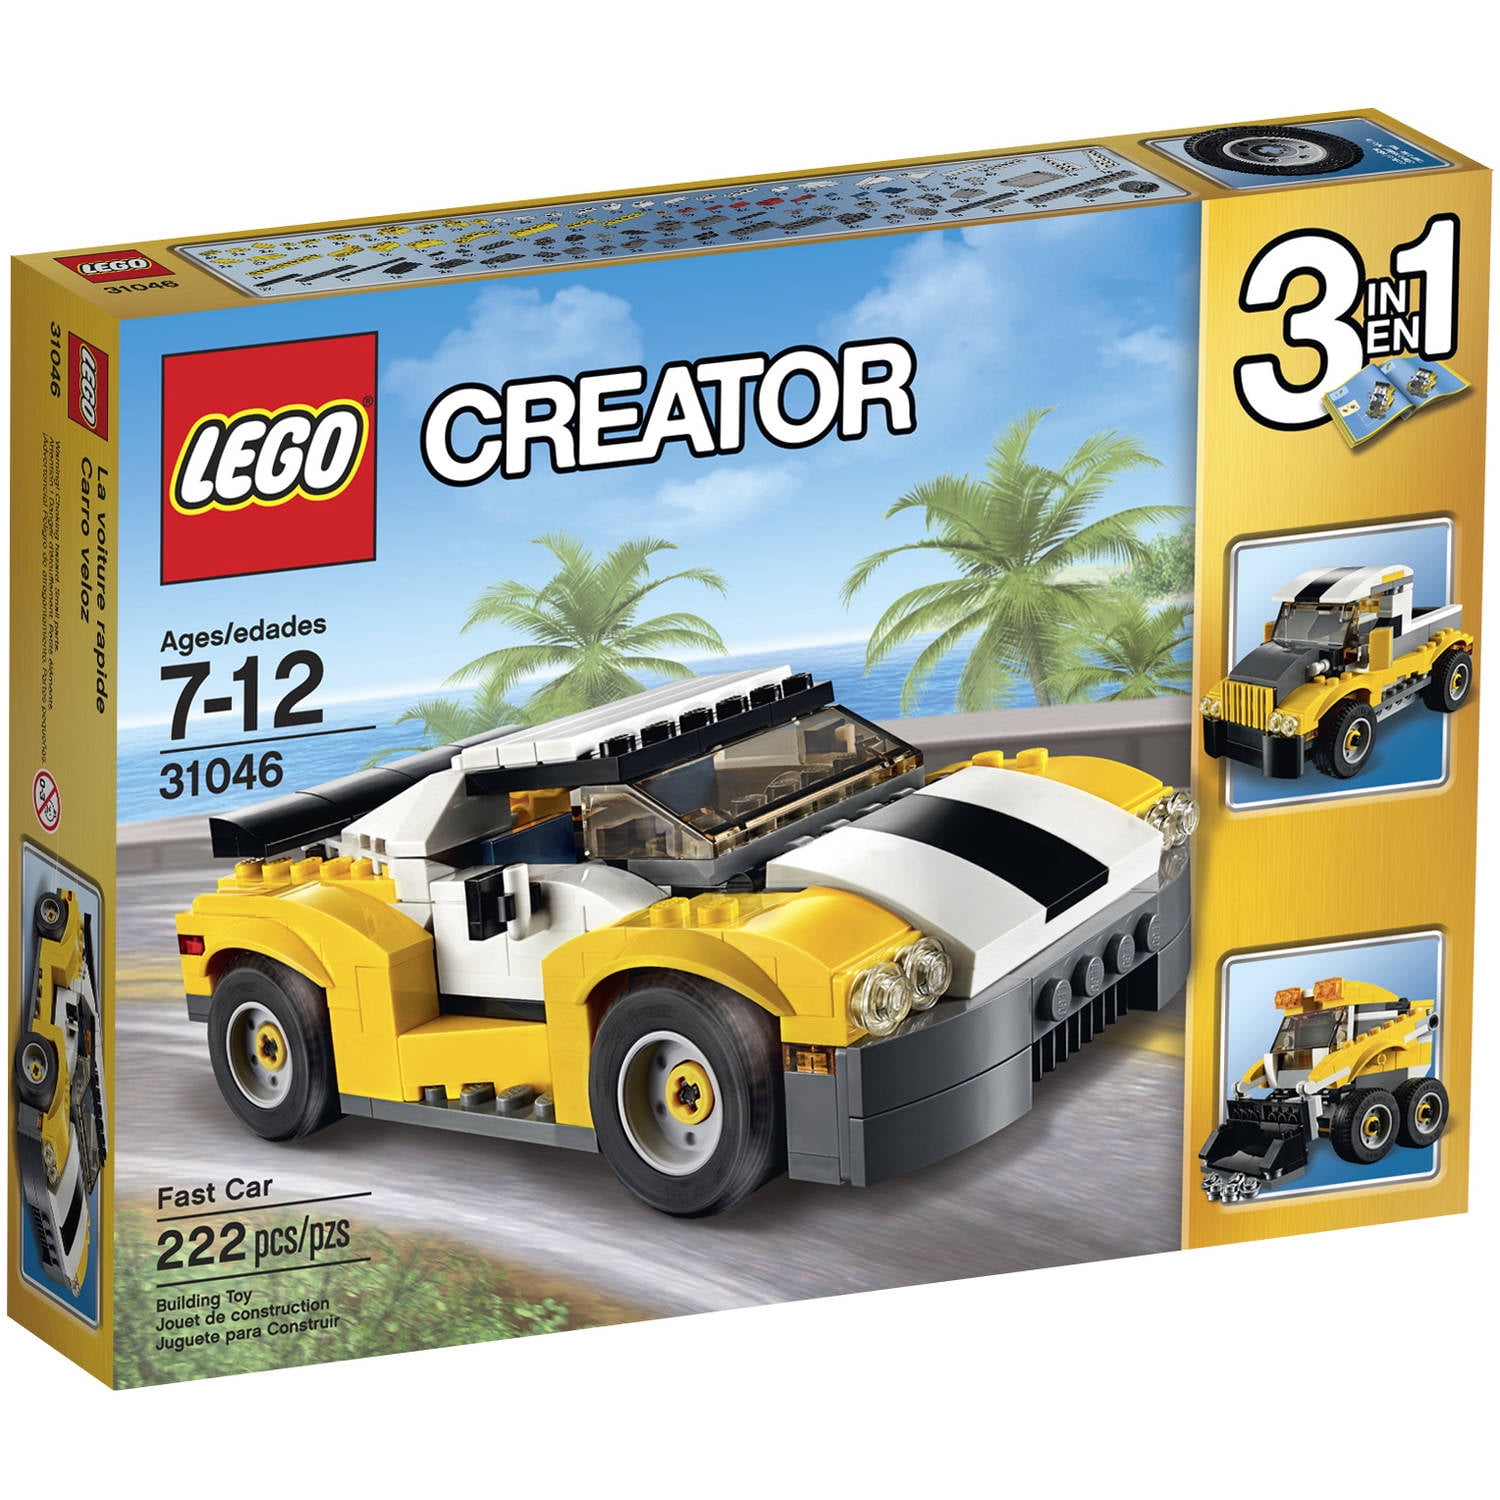 LEGO Creator Fast Car, 31046